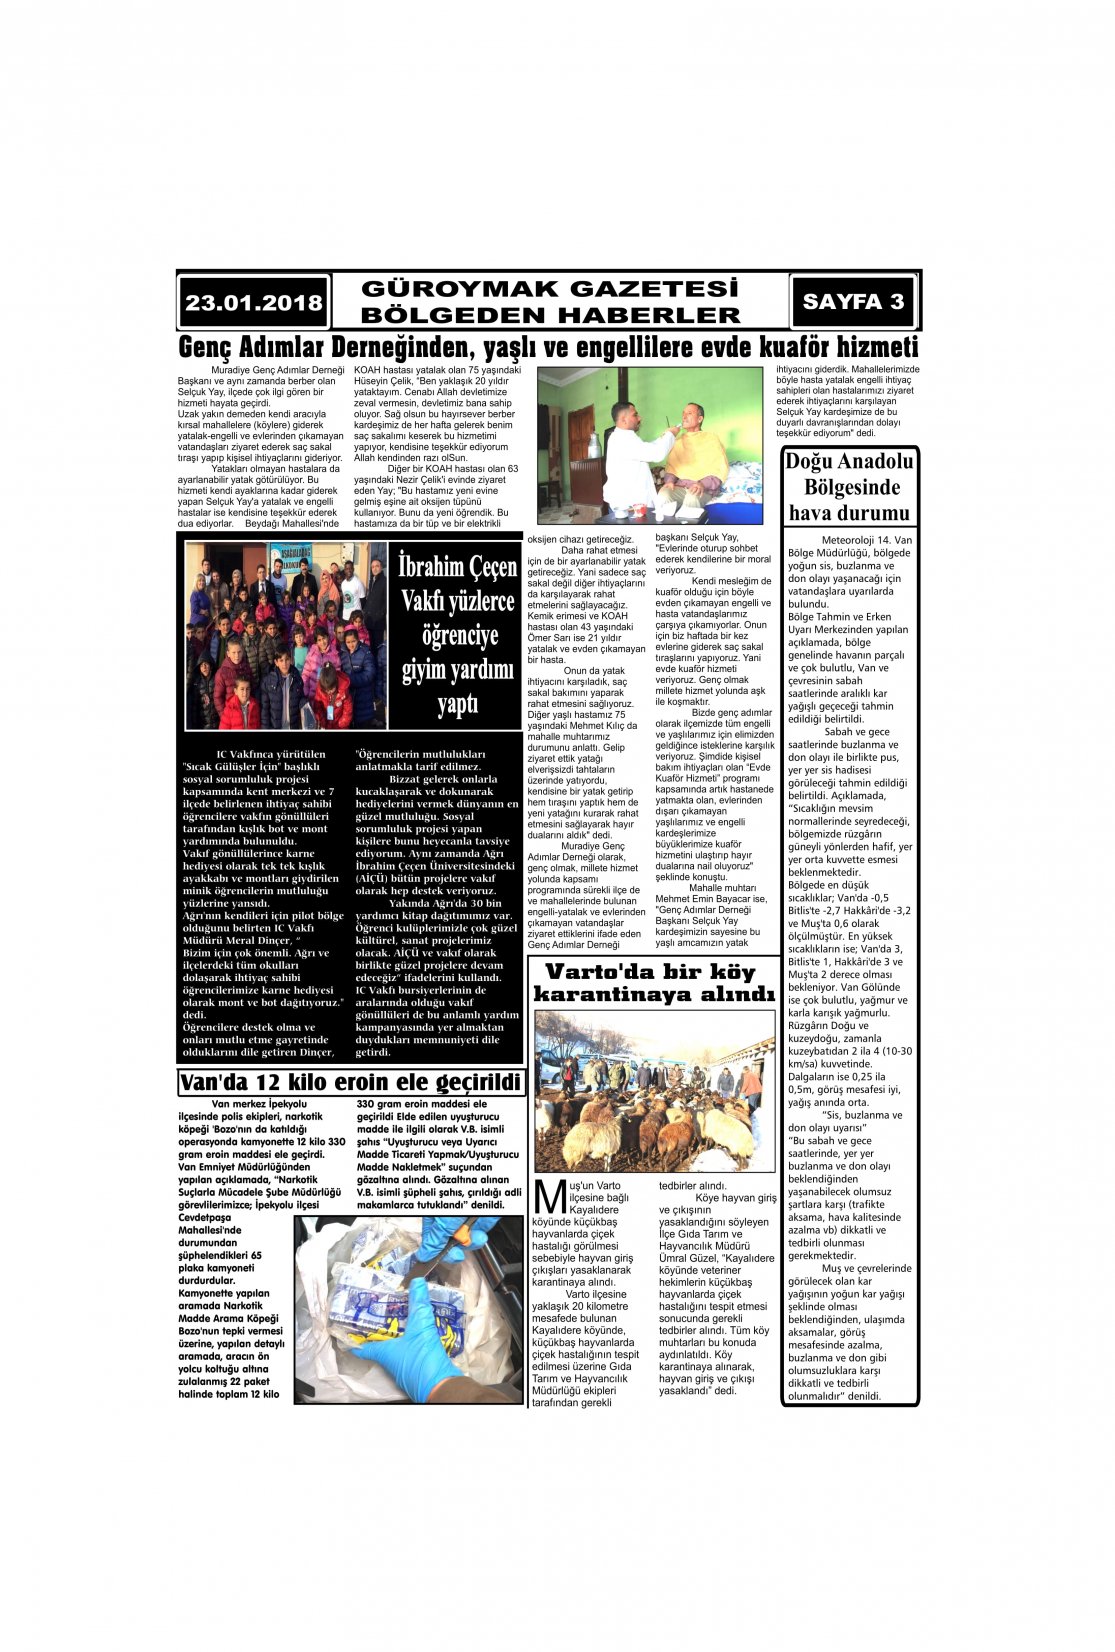 Güroymak Gazetesi 3-1.jpg Sayılı Gazete Küpürü